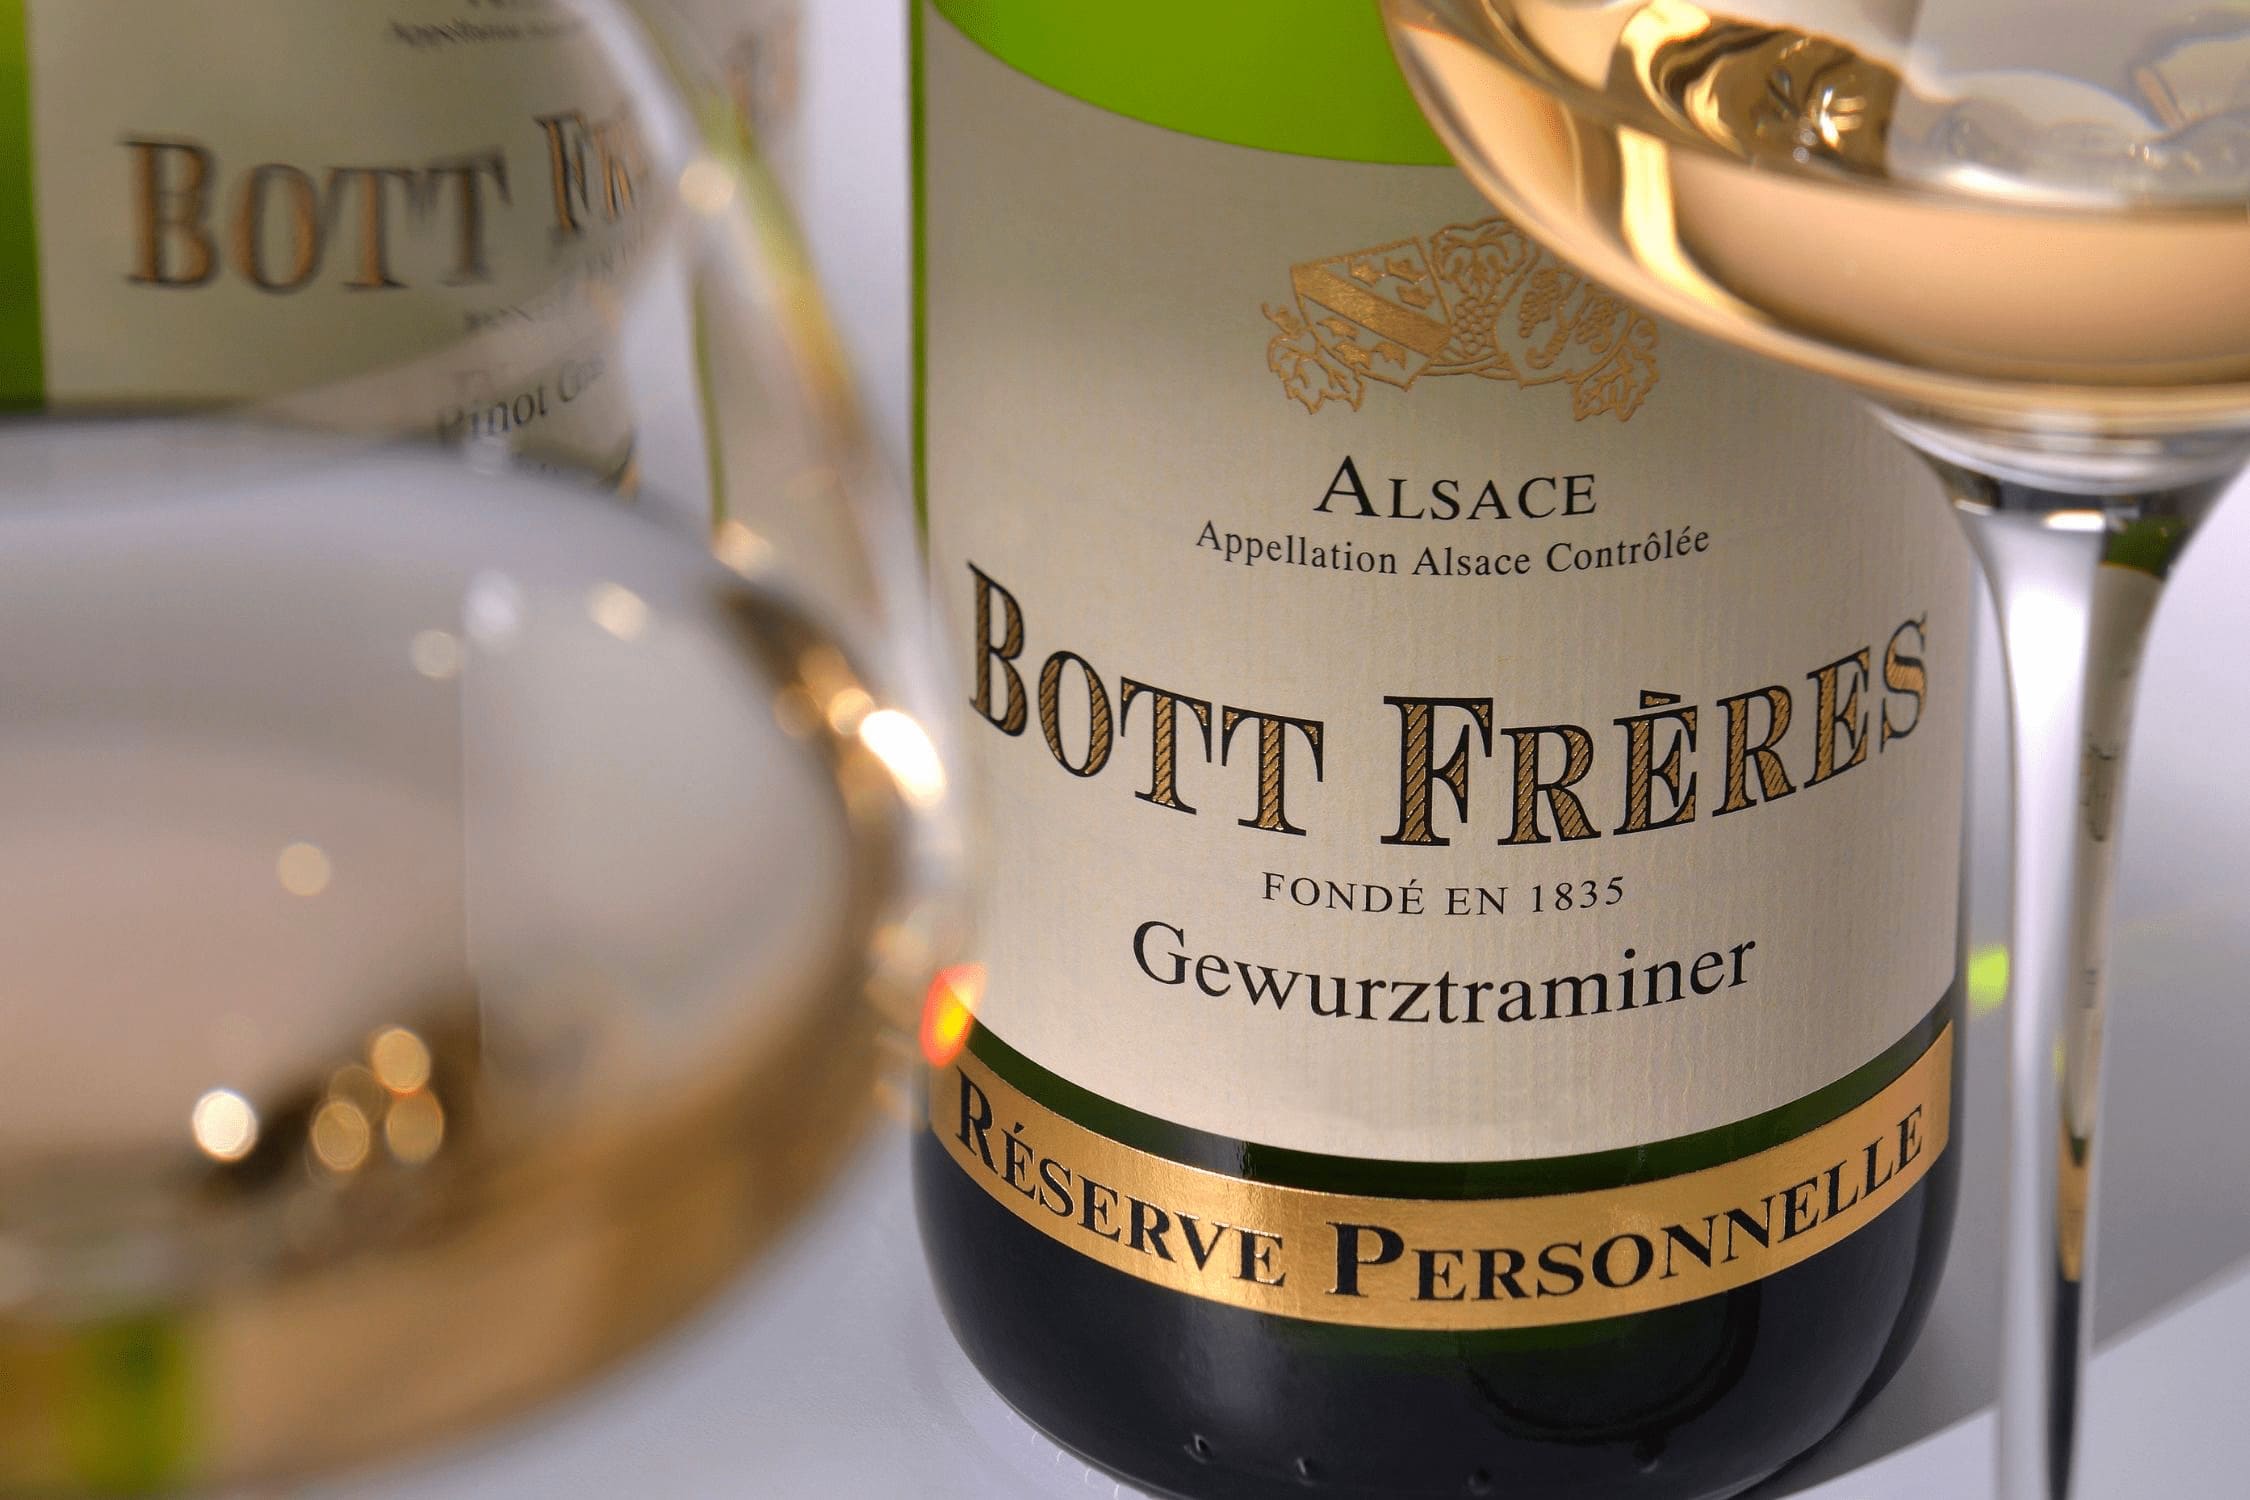 <p>Vente en ligne</p>
<p>Vins d'Alsace</p>